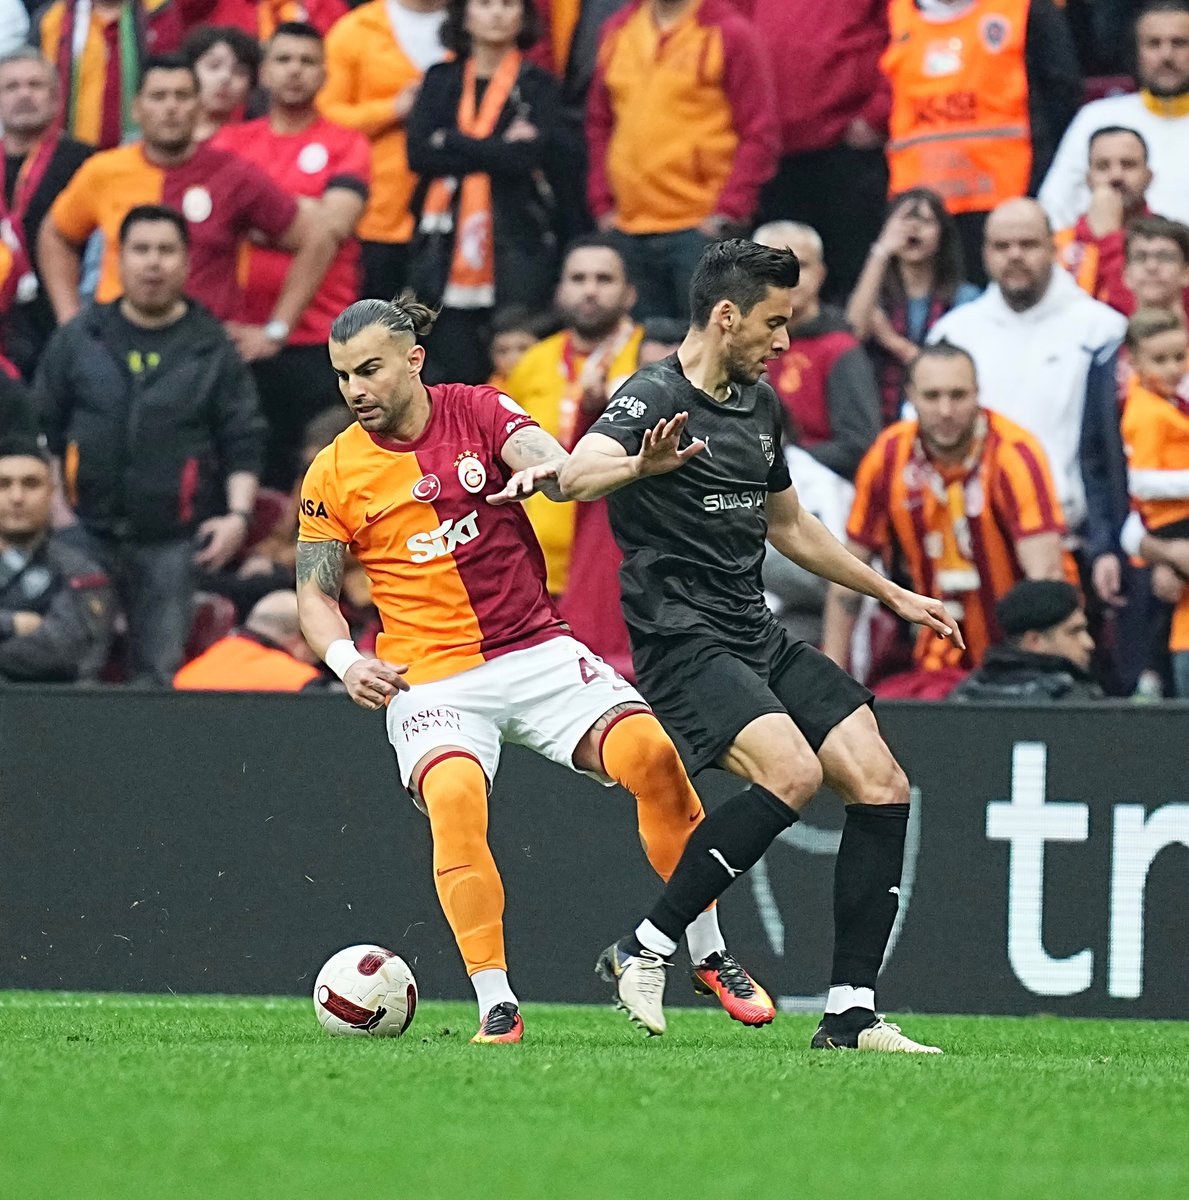 Yayında şov var! :) Geçen hafta Abdülkerim Bardakcı'nın iptal edilen golünün aynısı bugün verildi. Galatasaray'a gelince iptal, başkalarına gelince gol... CANLI: youtube.com/live/OjVWriqXg…